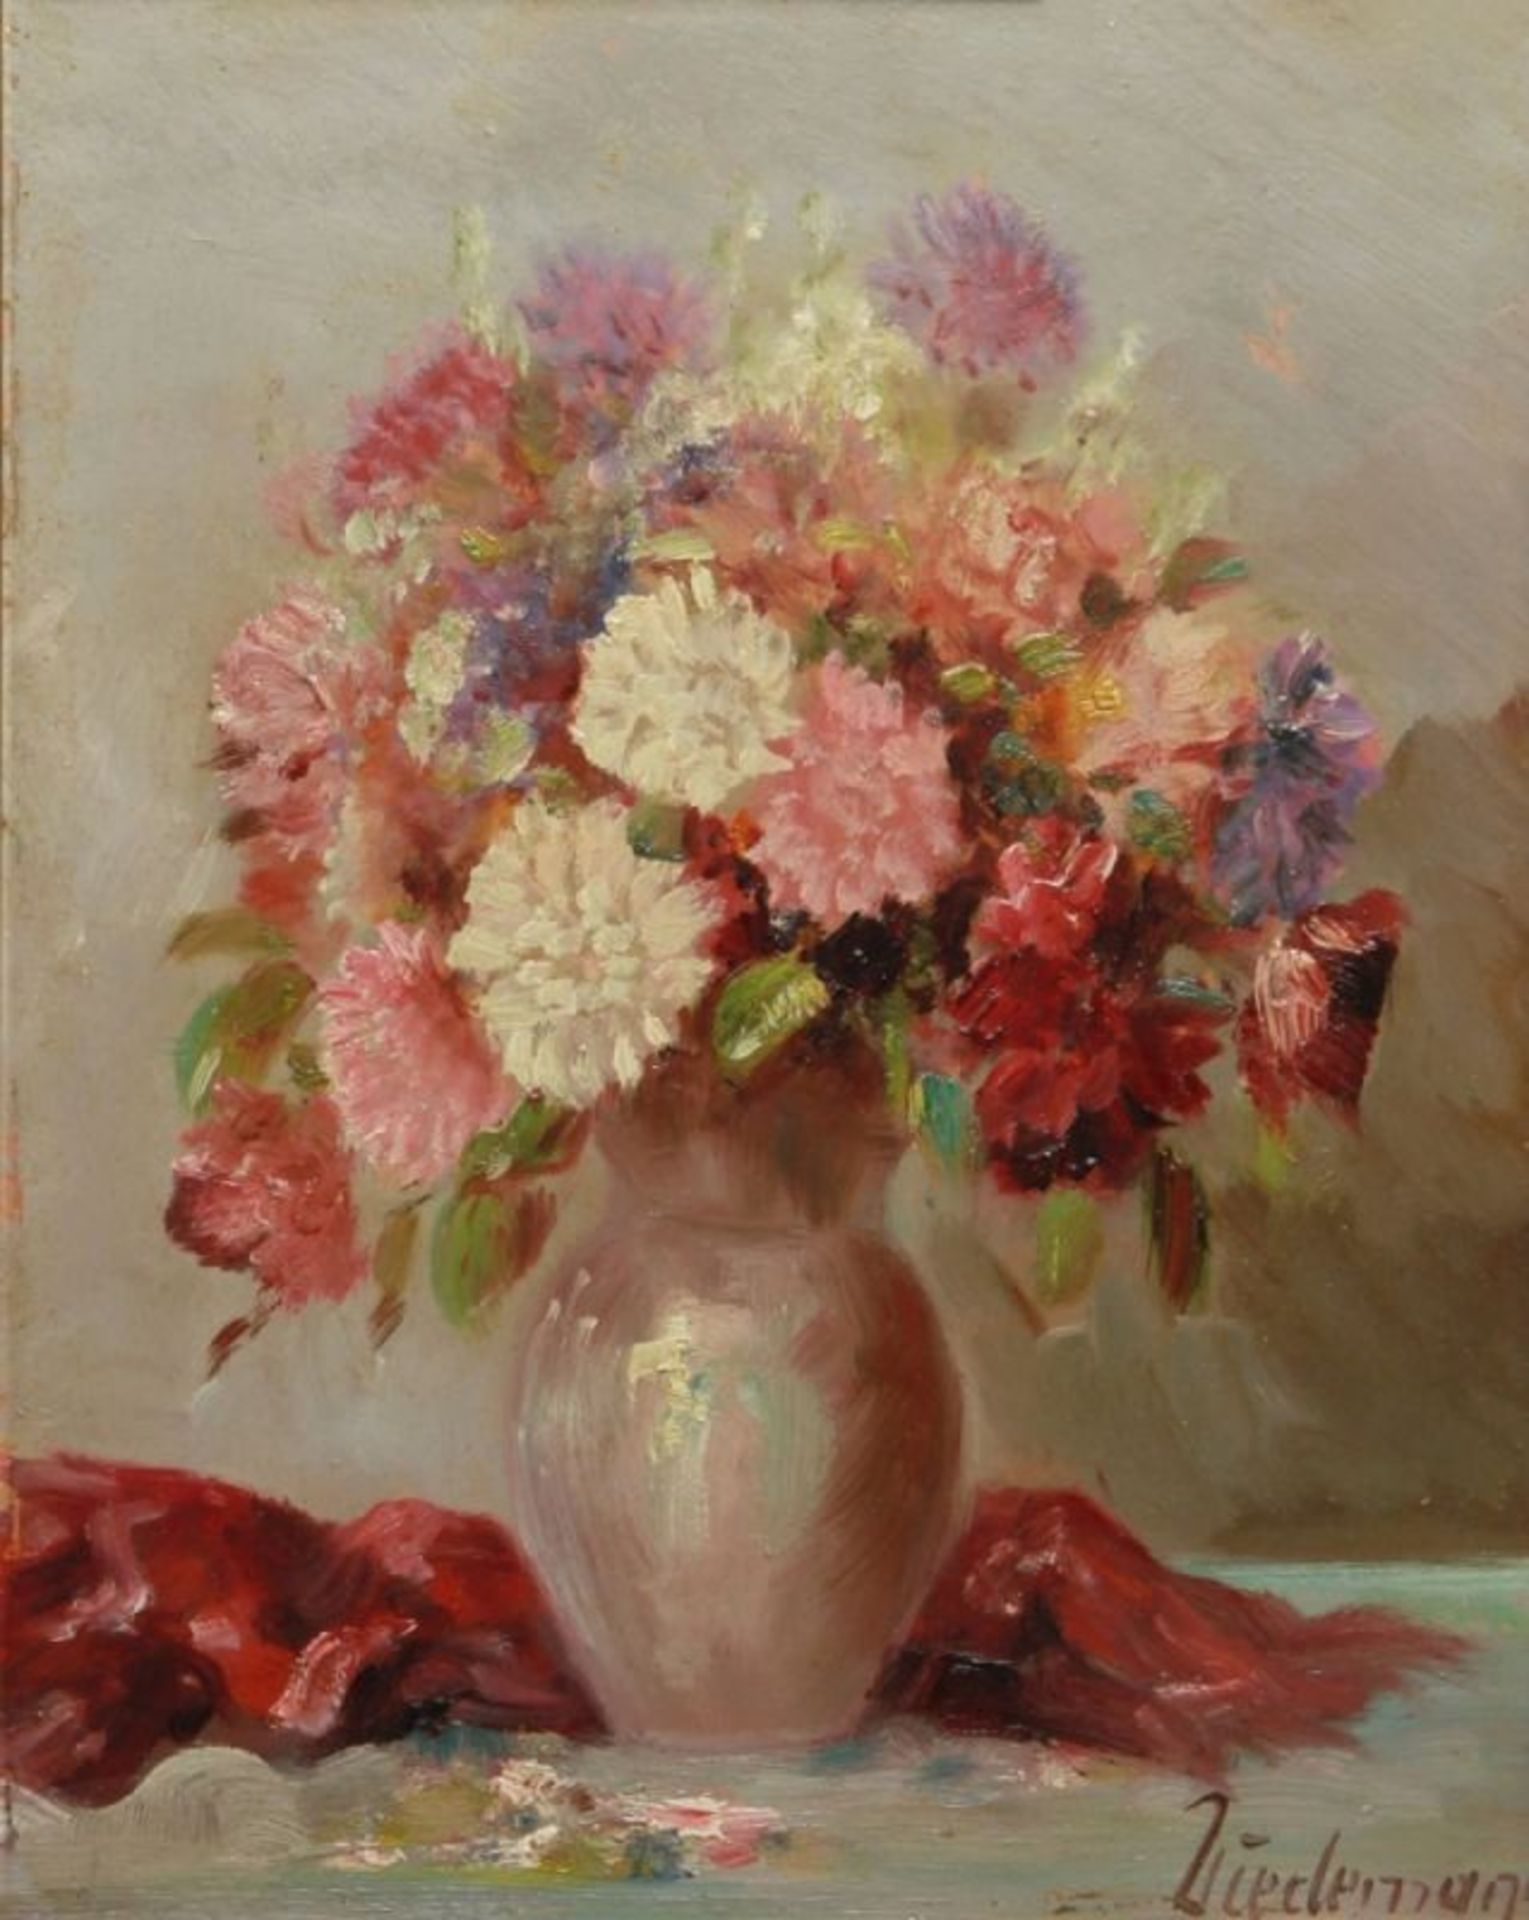 Wiedemann, Ludwig, dt. Maler 1934 - 2007. "Blumenstrauß in Vase", sign., Öl/Hartfaser, 30x 24 cm